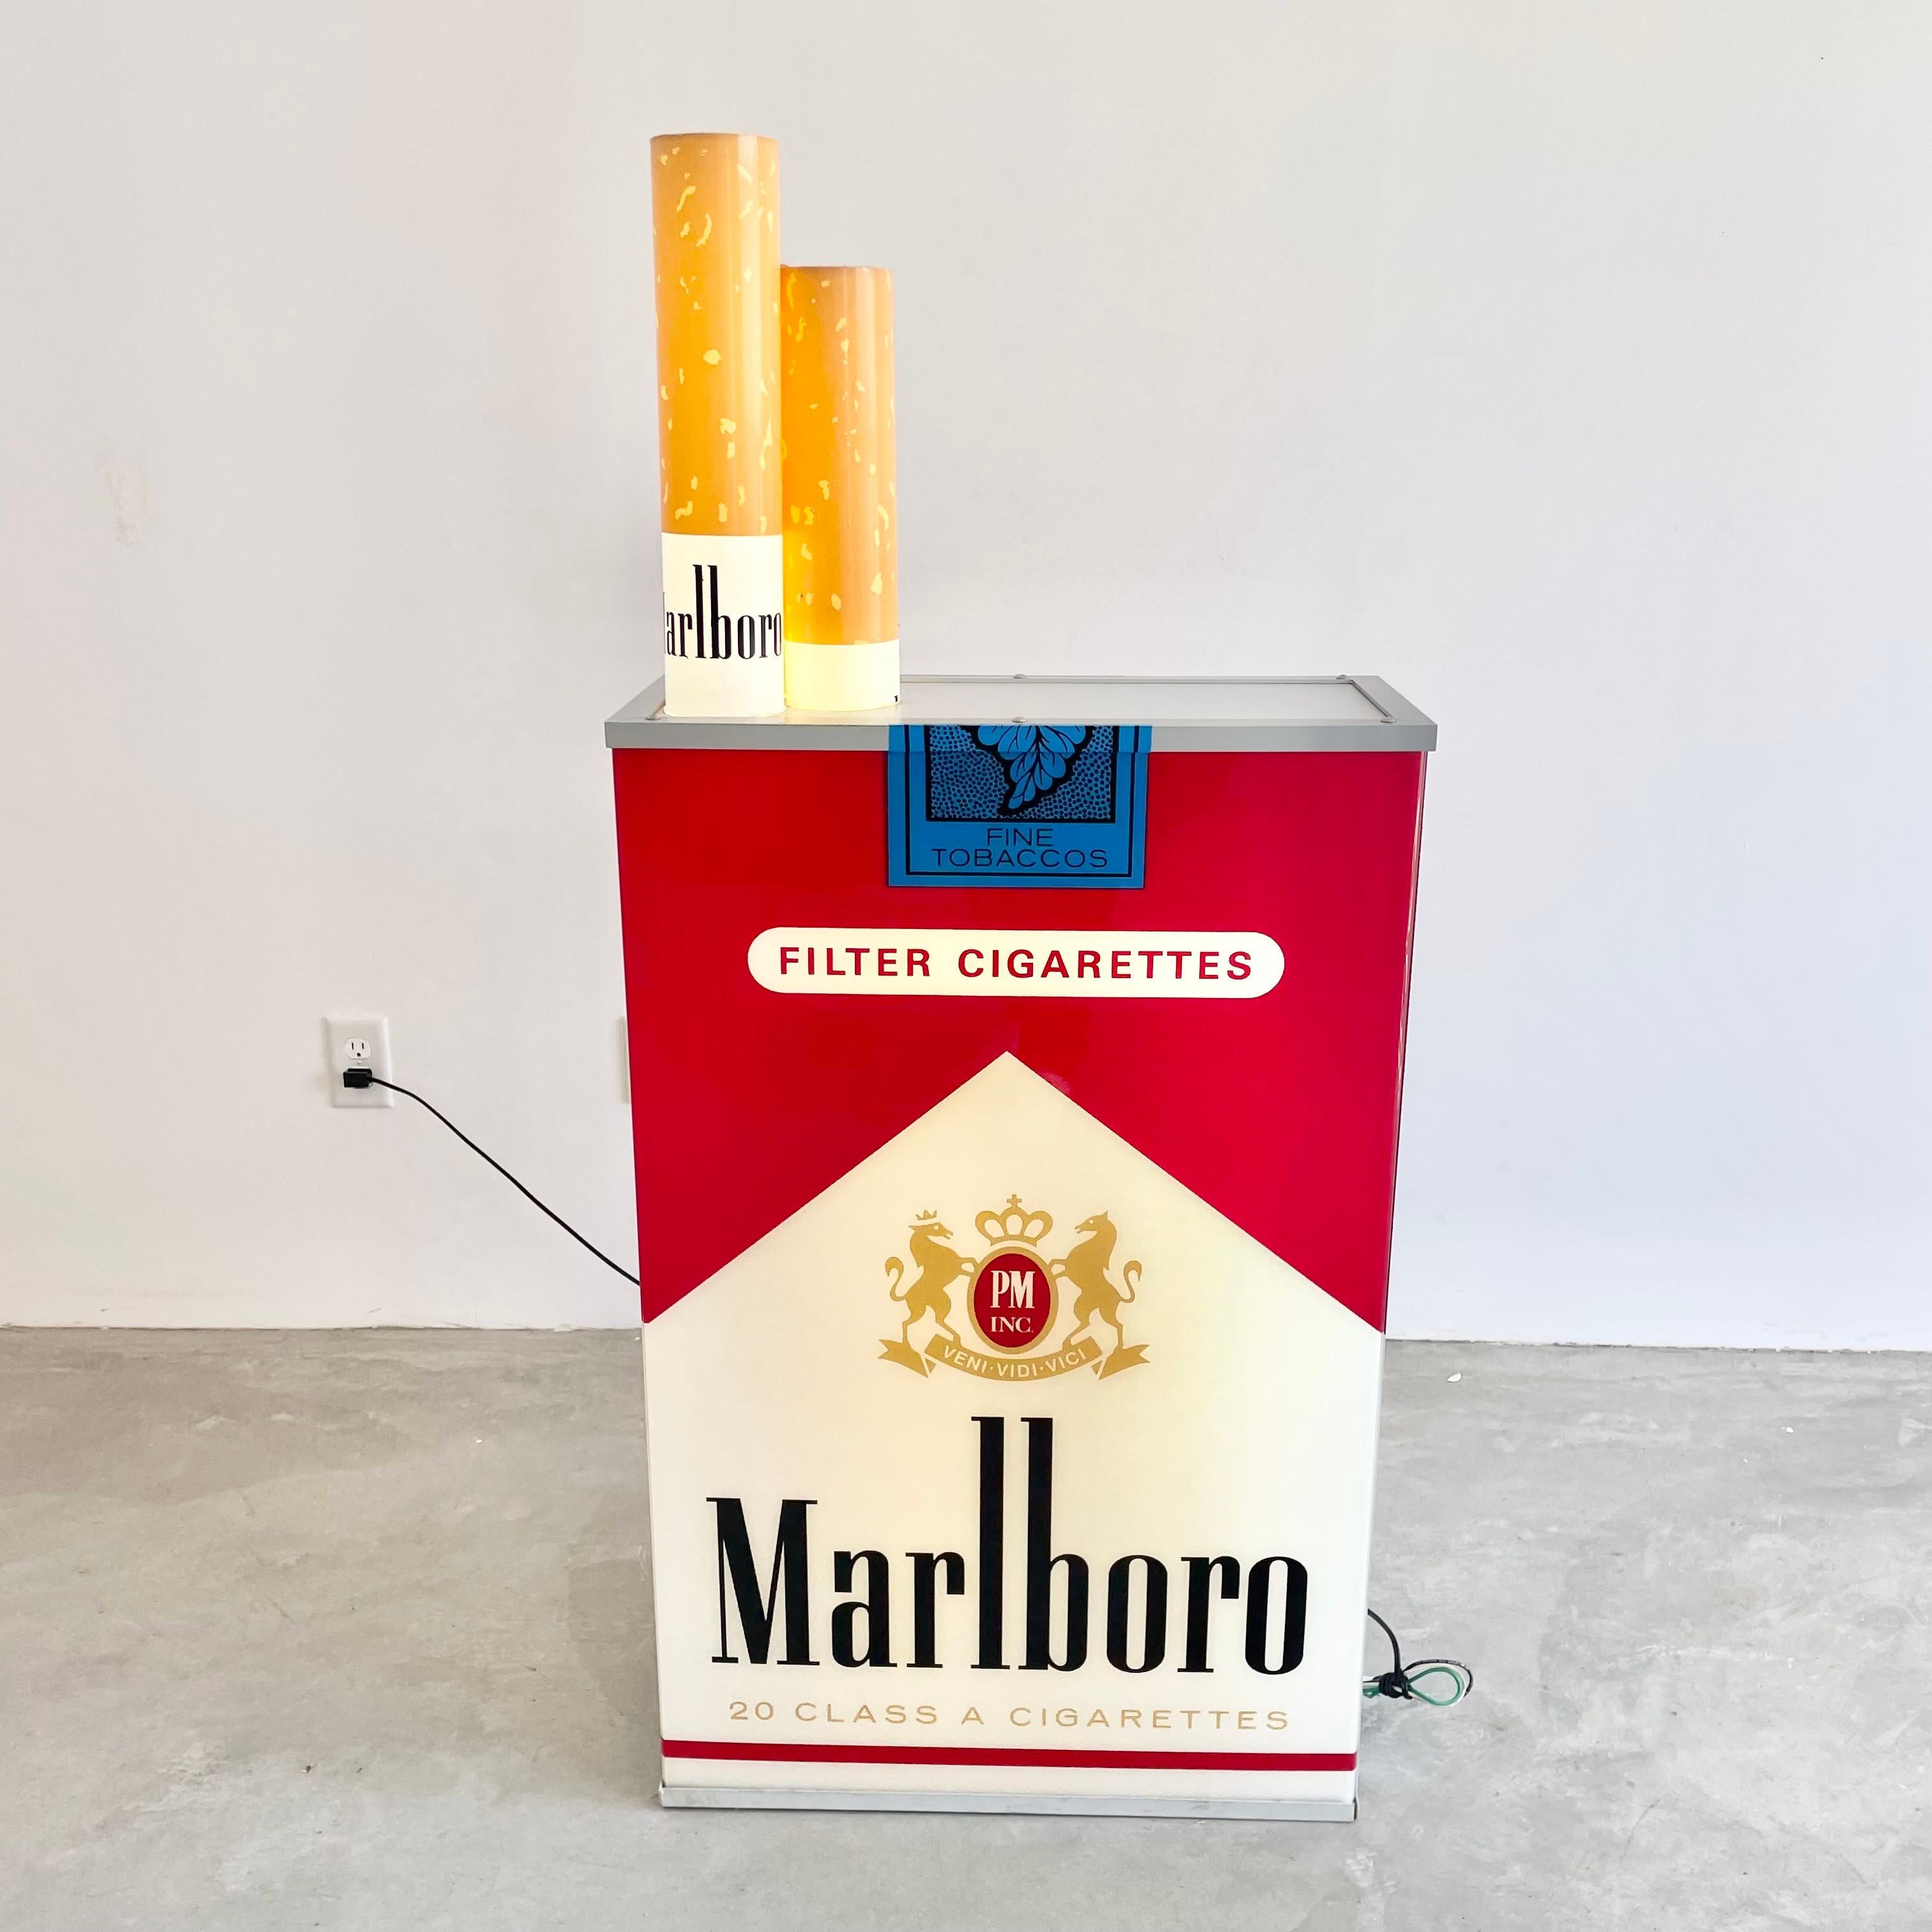 giant cigarette pack